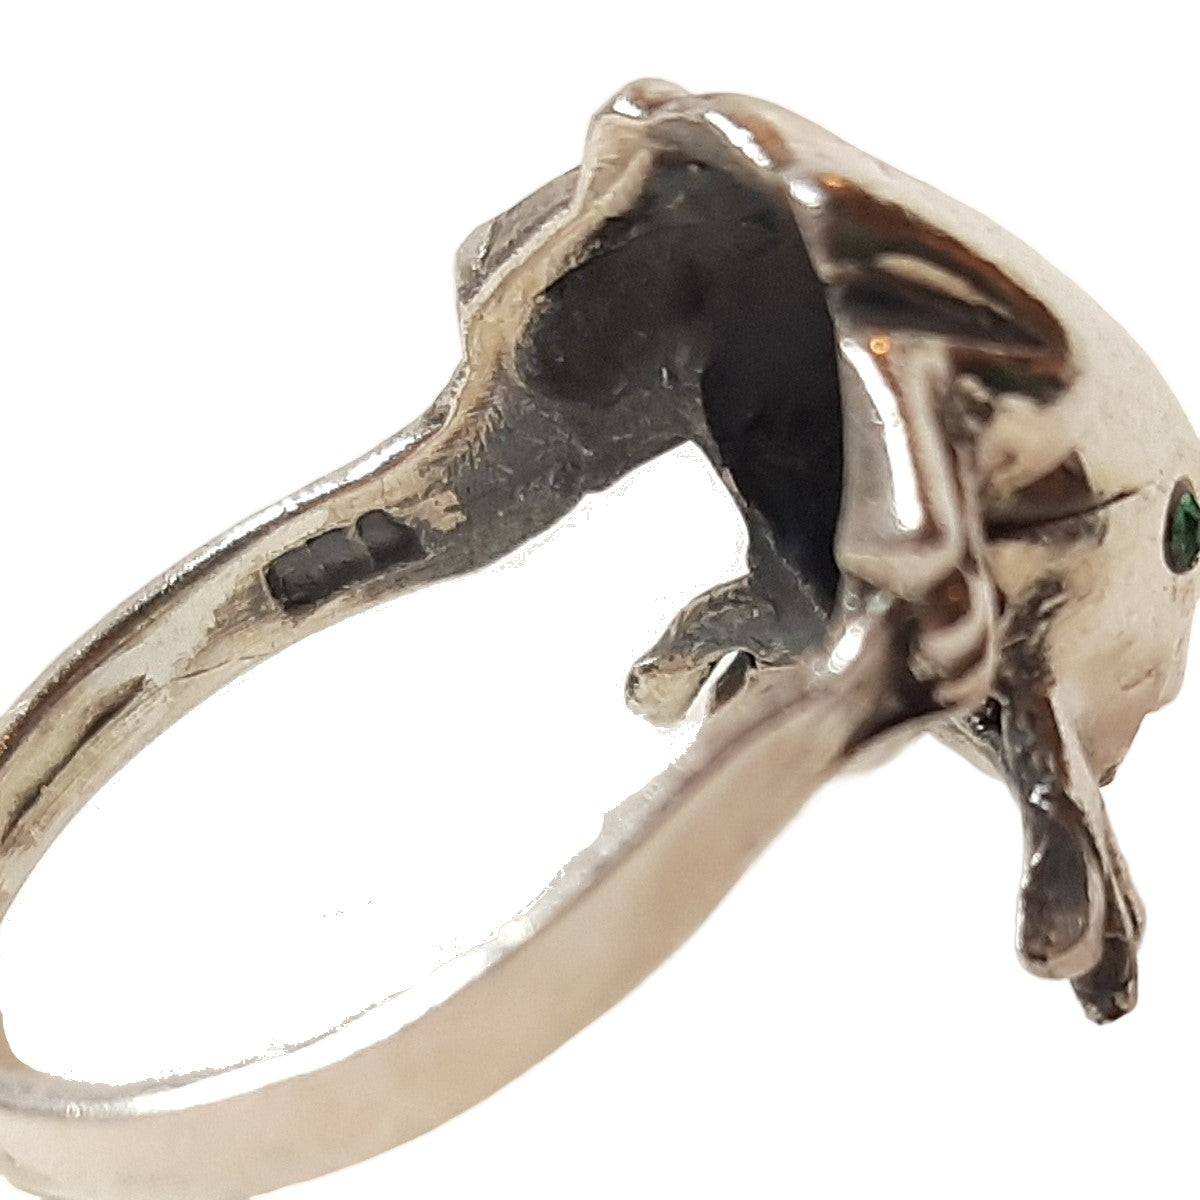 ヴィンテージ メキシカンシルバー925 カエル 両生類 リング 10.5号5g / Vintage Mexico Sterling Silver Frog Ring